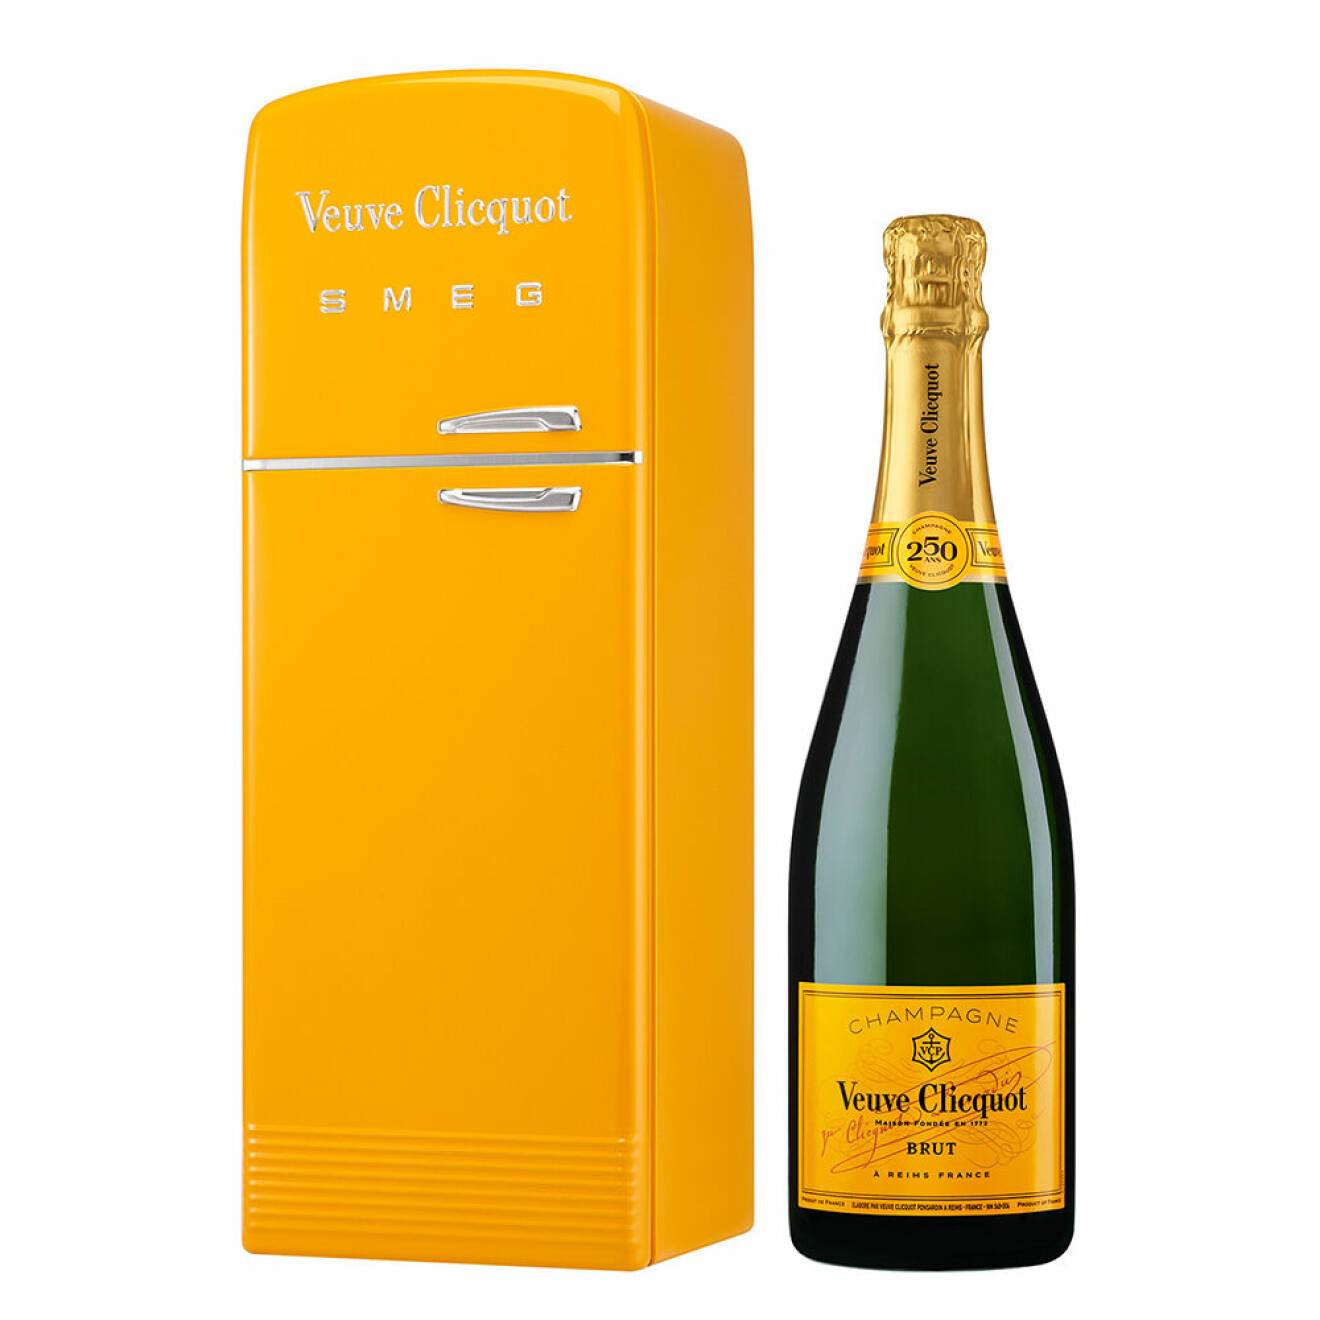 Både minikylskåpen för en champagneflaska och specialutgåvan av full size-kylskåpen kommer i den ikoniska Yellow Veuve Clicquot-färgen.